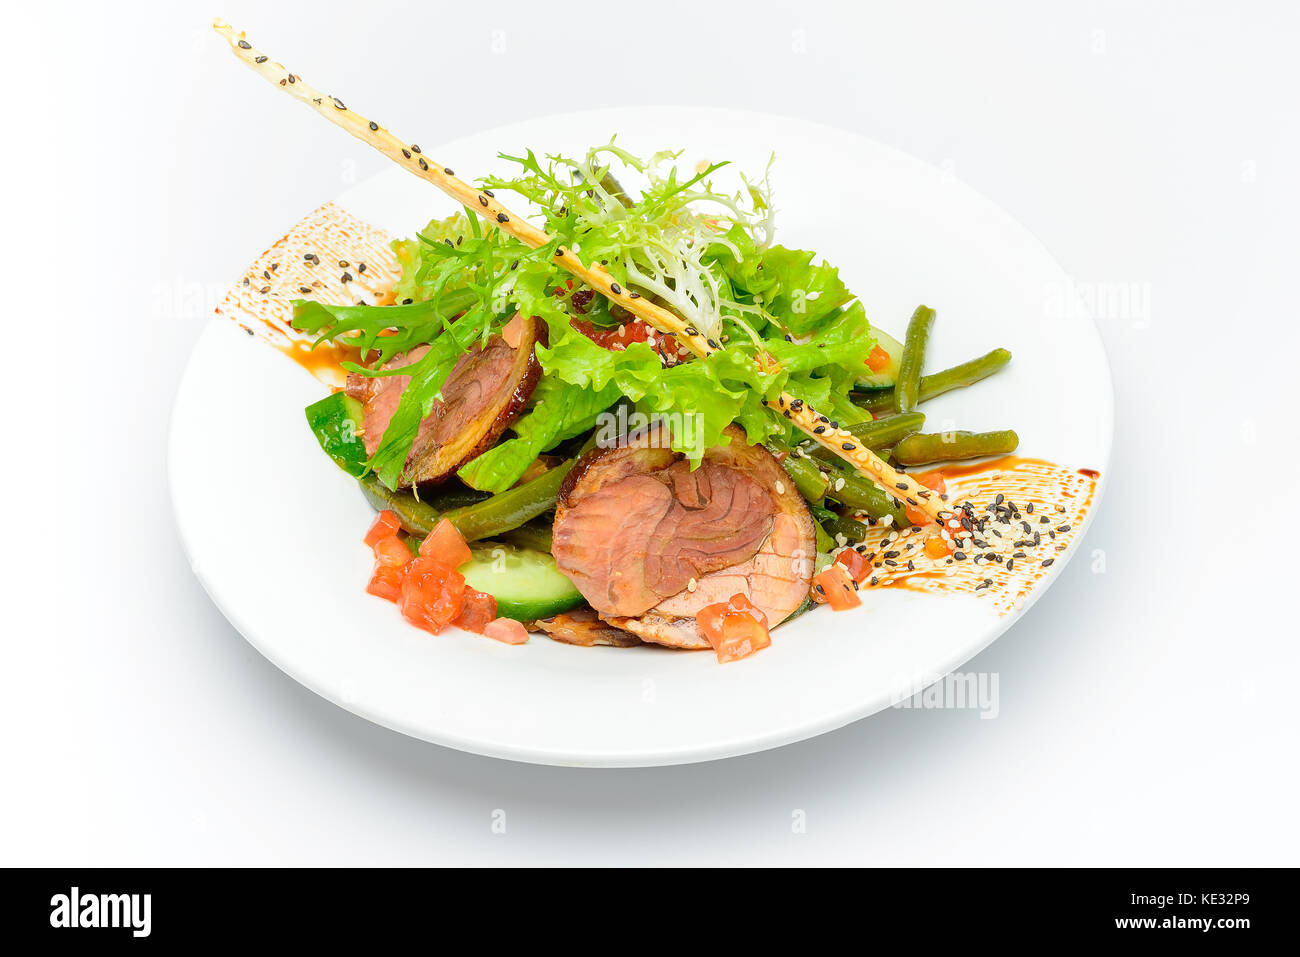 Des tranches de viande avec la décoration de la salade, tomates, concombre Banque D'Images